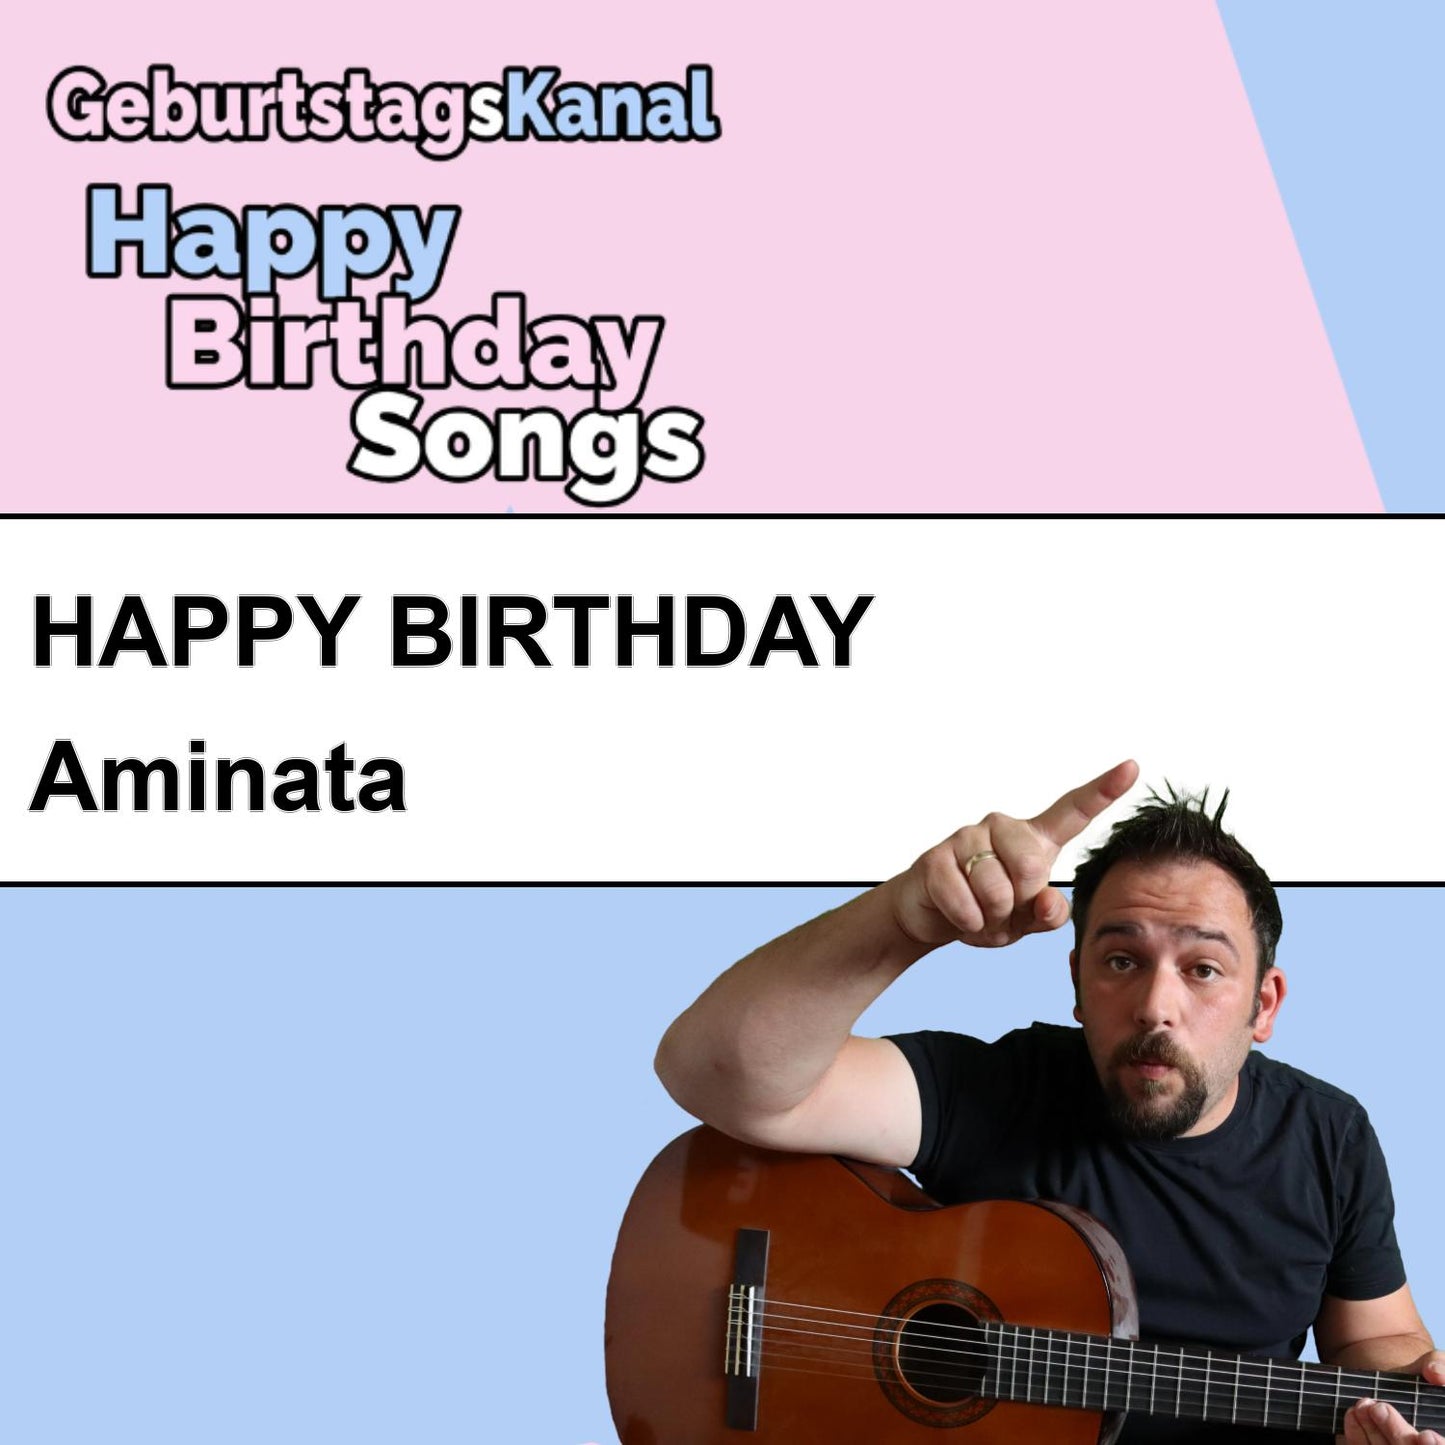 Produktbild Happy Birthday to you Aminata mit Wunschgrußbotschaft